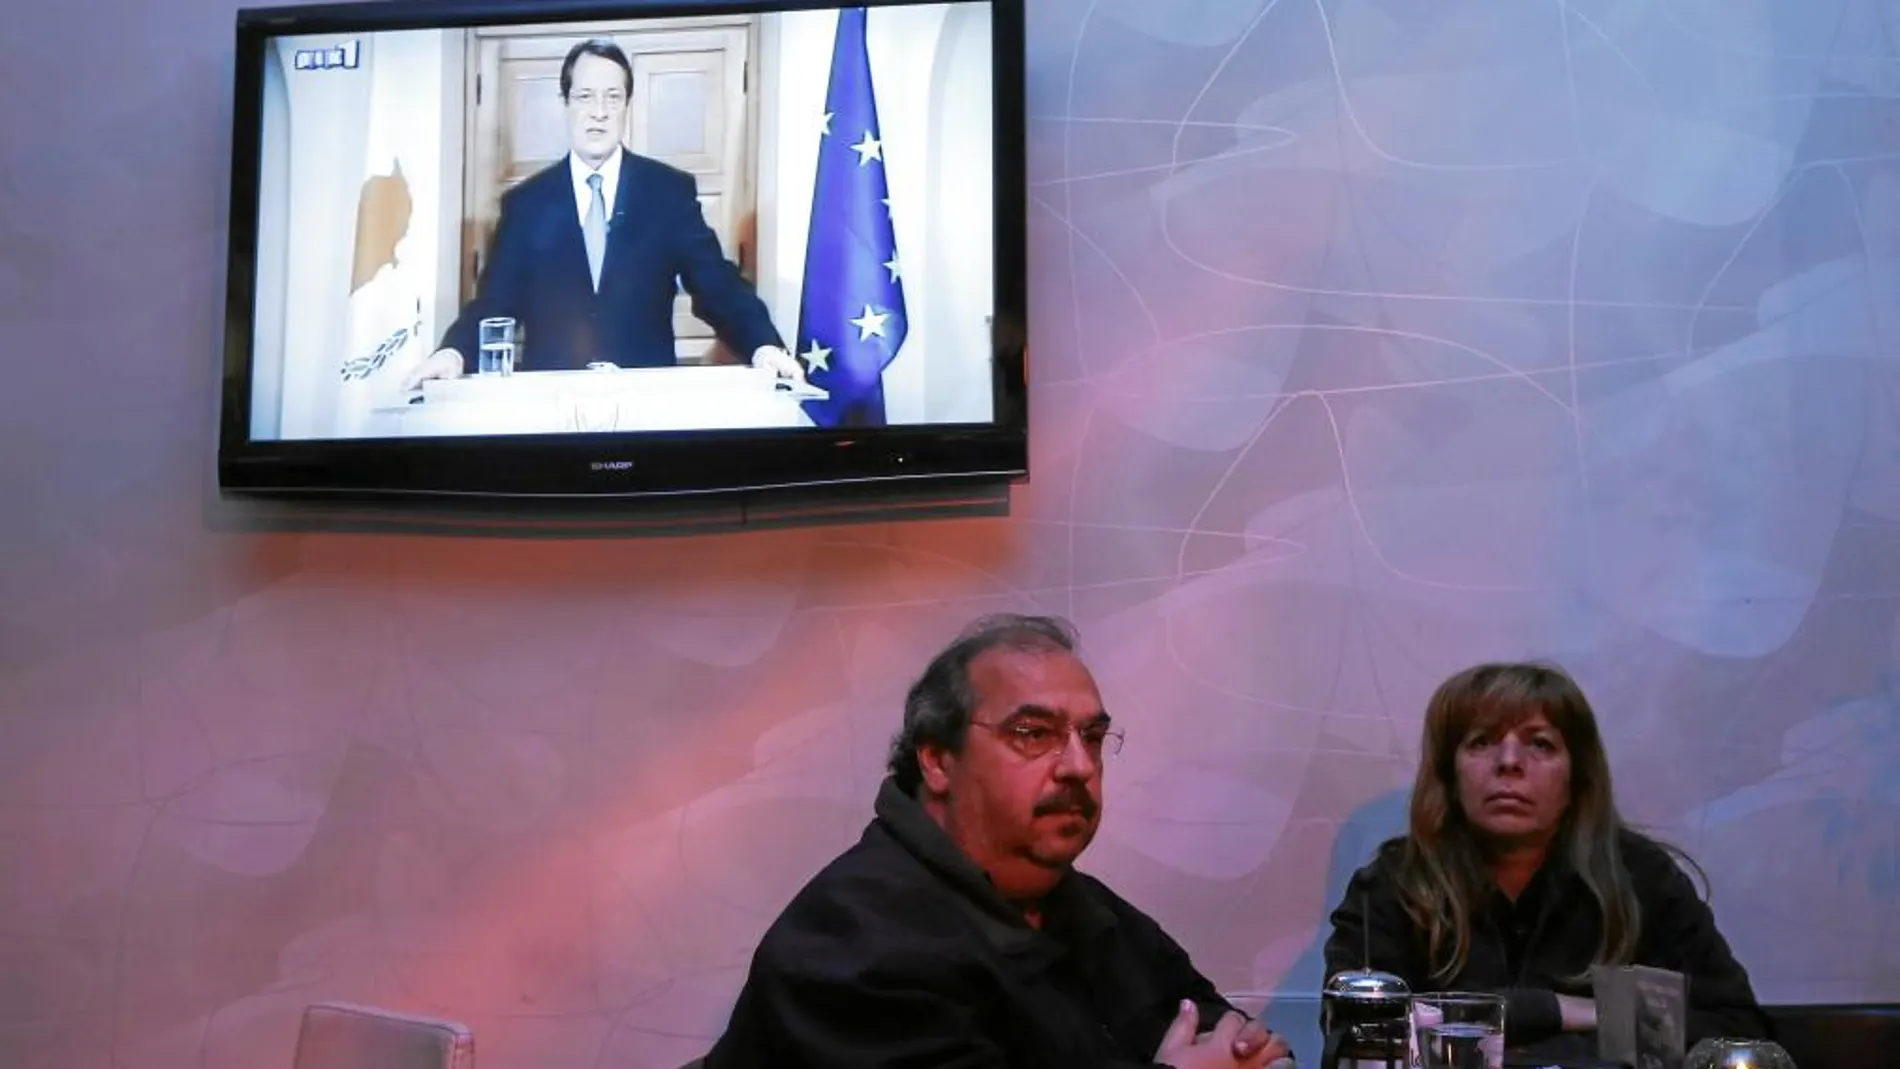 El discurso del presidente chipriota se difundió por televisión